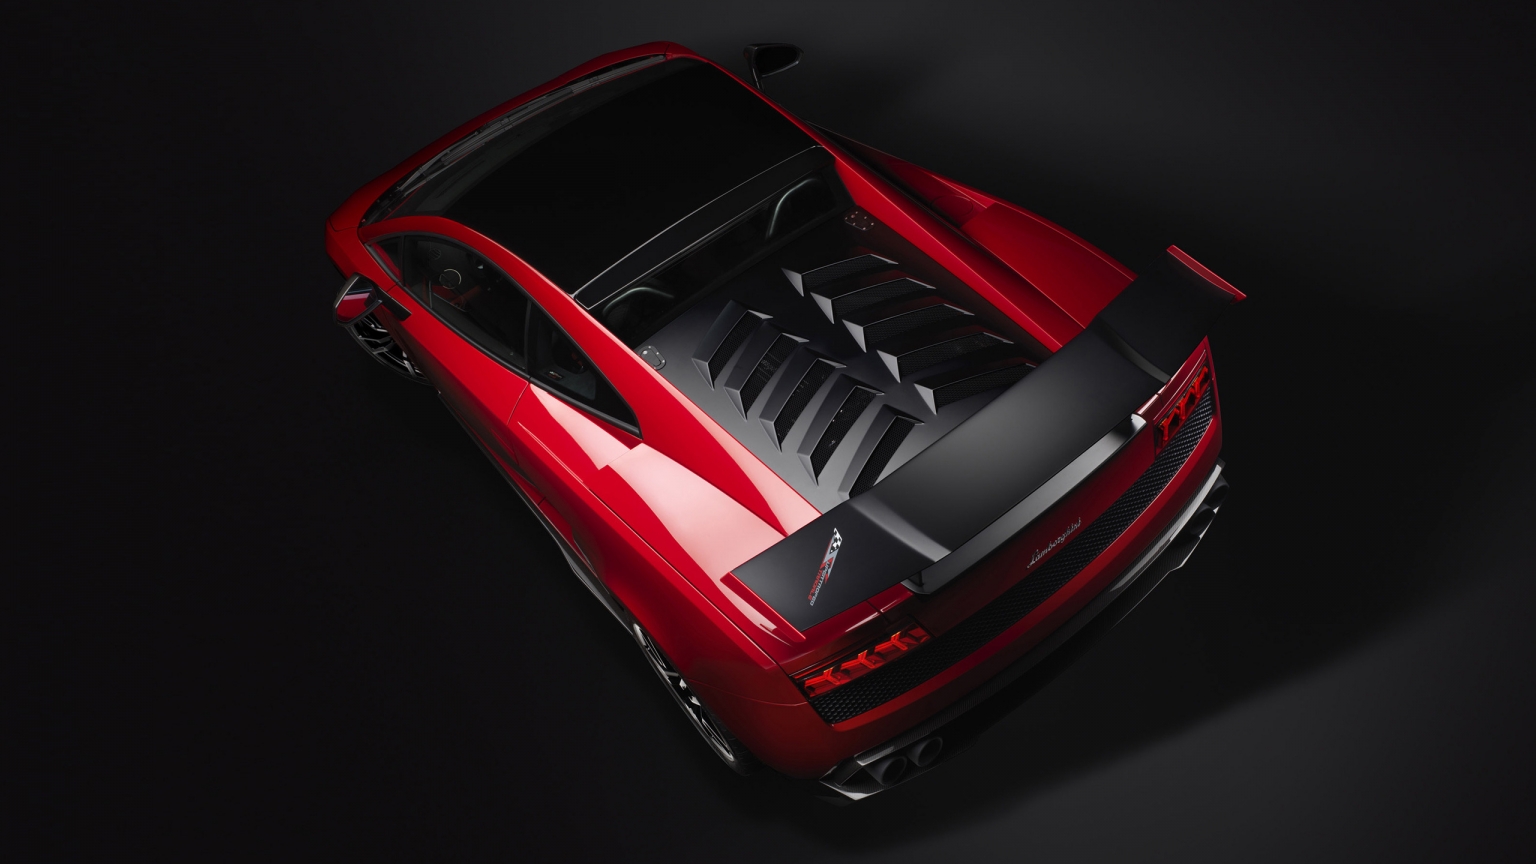 Red Lamborghini Gallardo Stradale for 1536 x 864 HDTV resolution